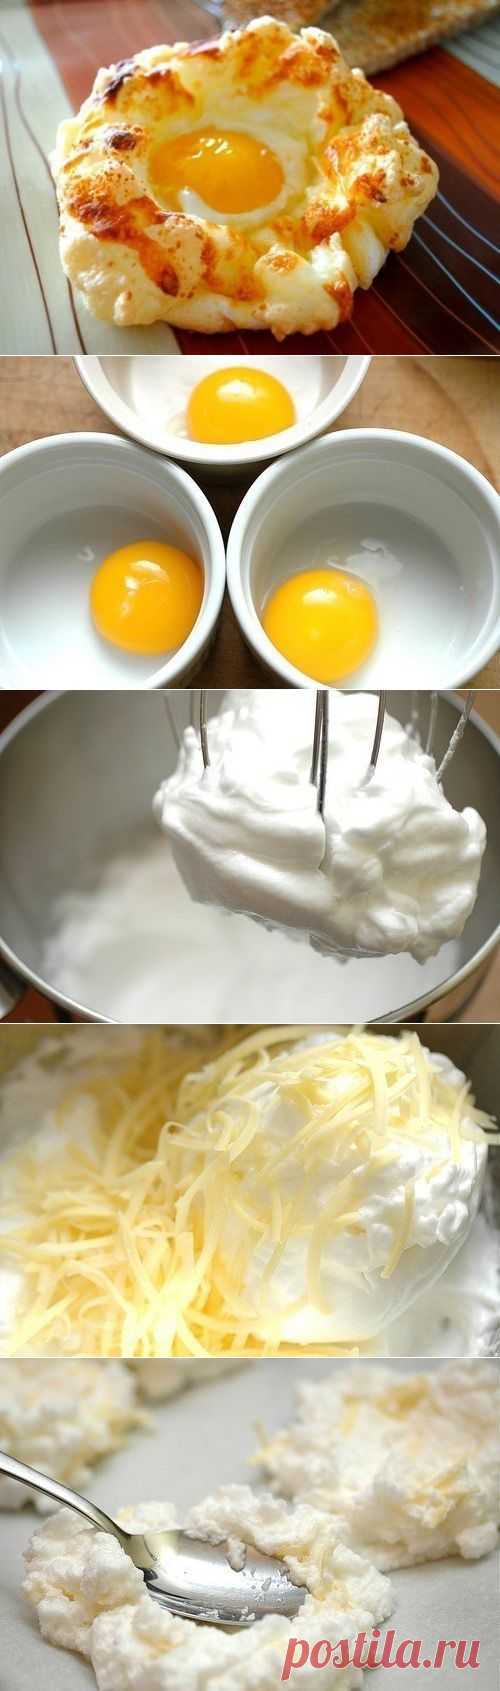 Яйца в пуховом гнезде - Простые рецепты Овкусе.ру